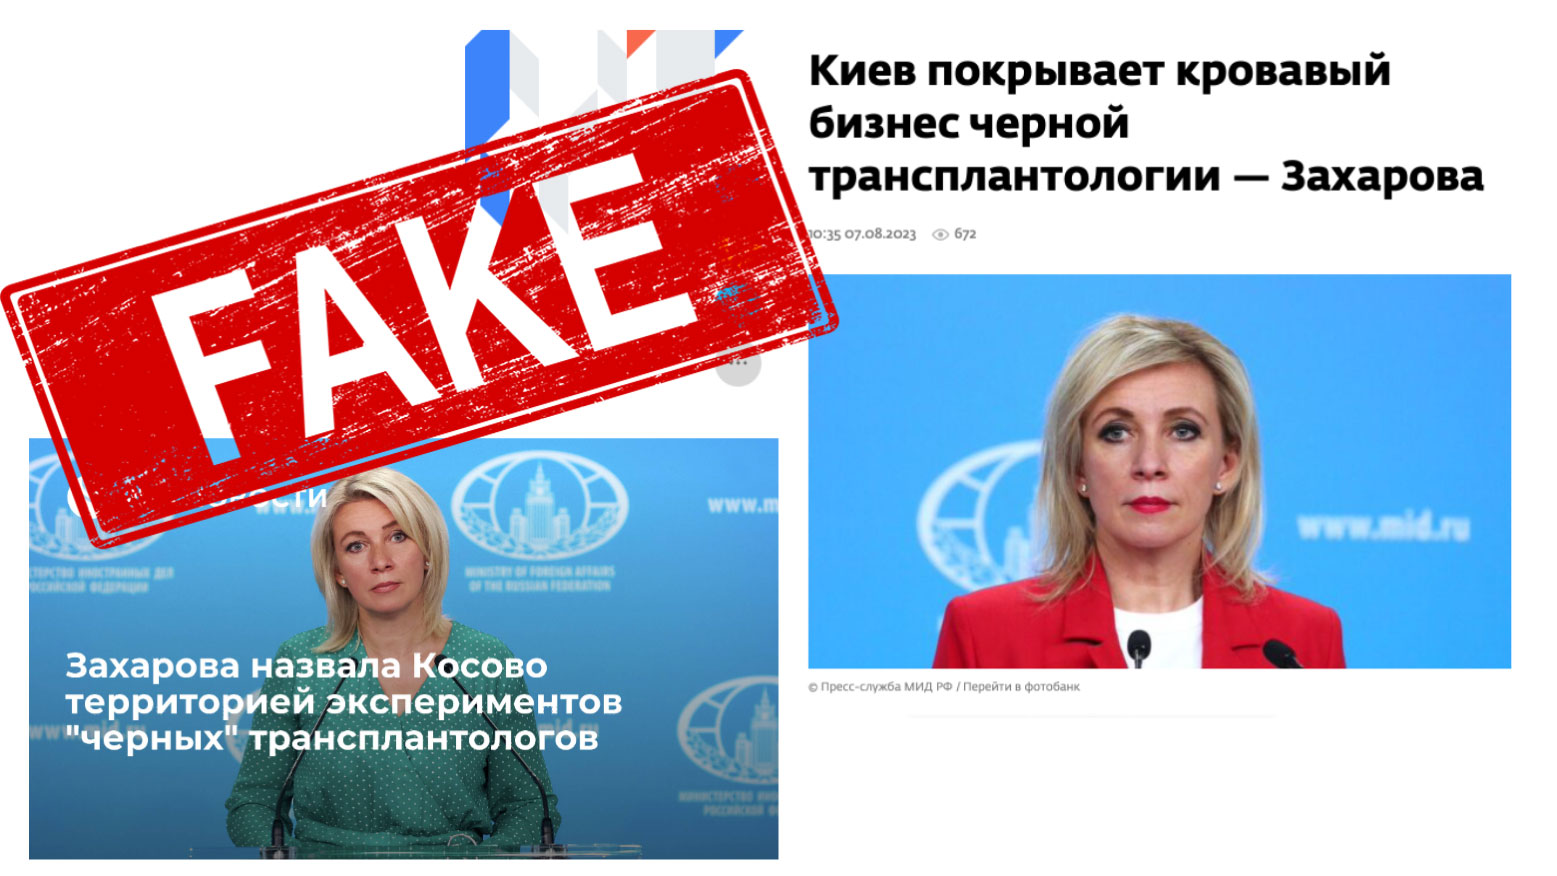 Sekretar za štampu ruskog ministarstva vanjskih poslova ponovo širi lažne podatke o Ukrajini